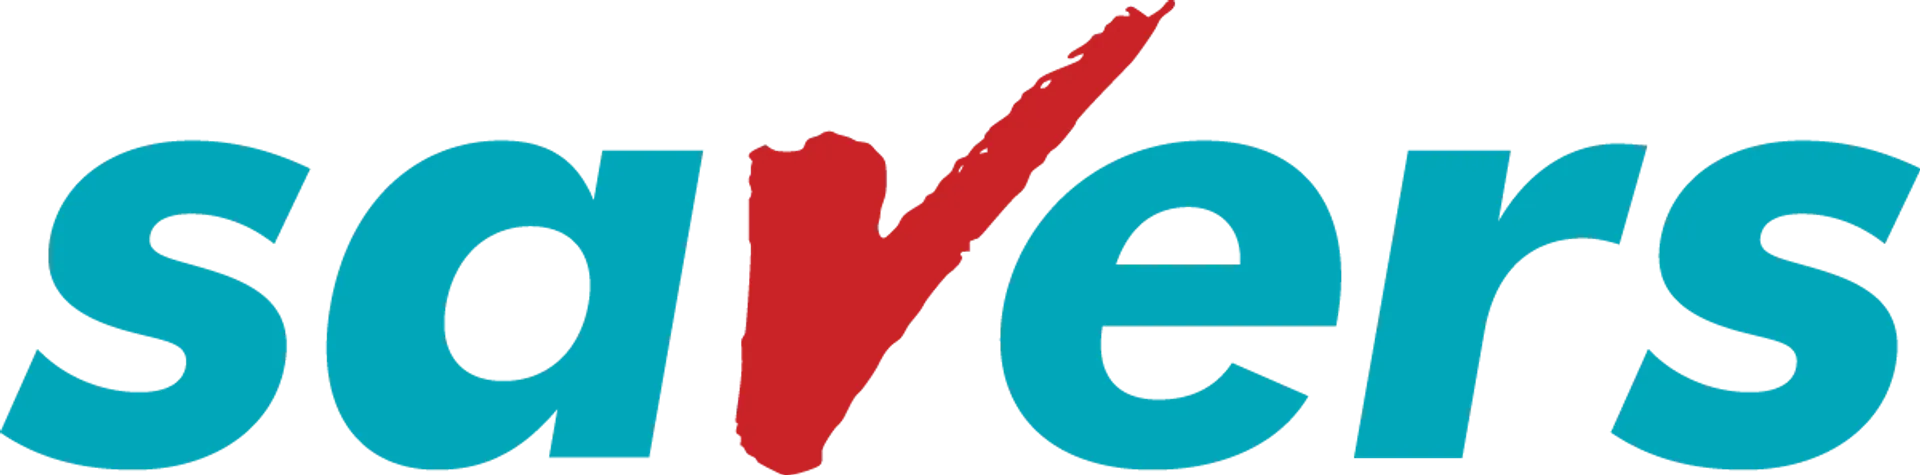 SAVERS logo